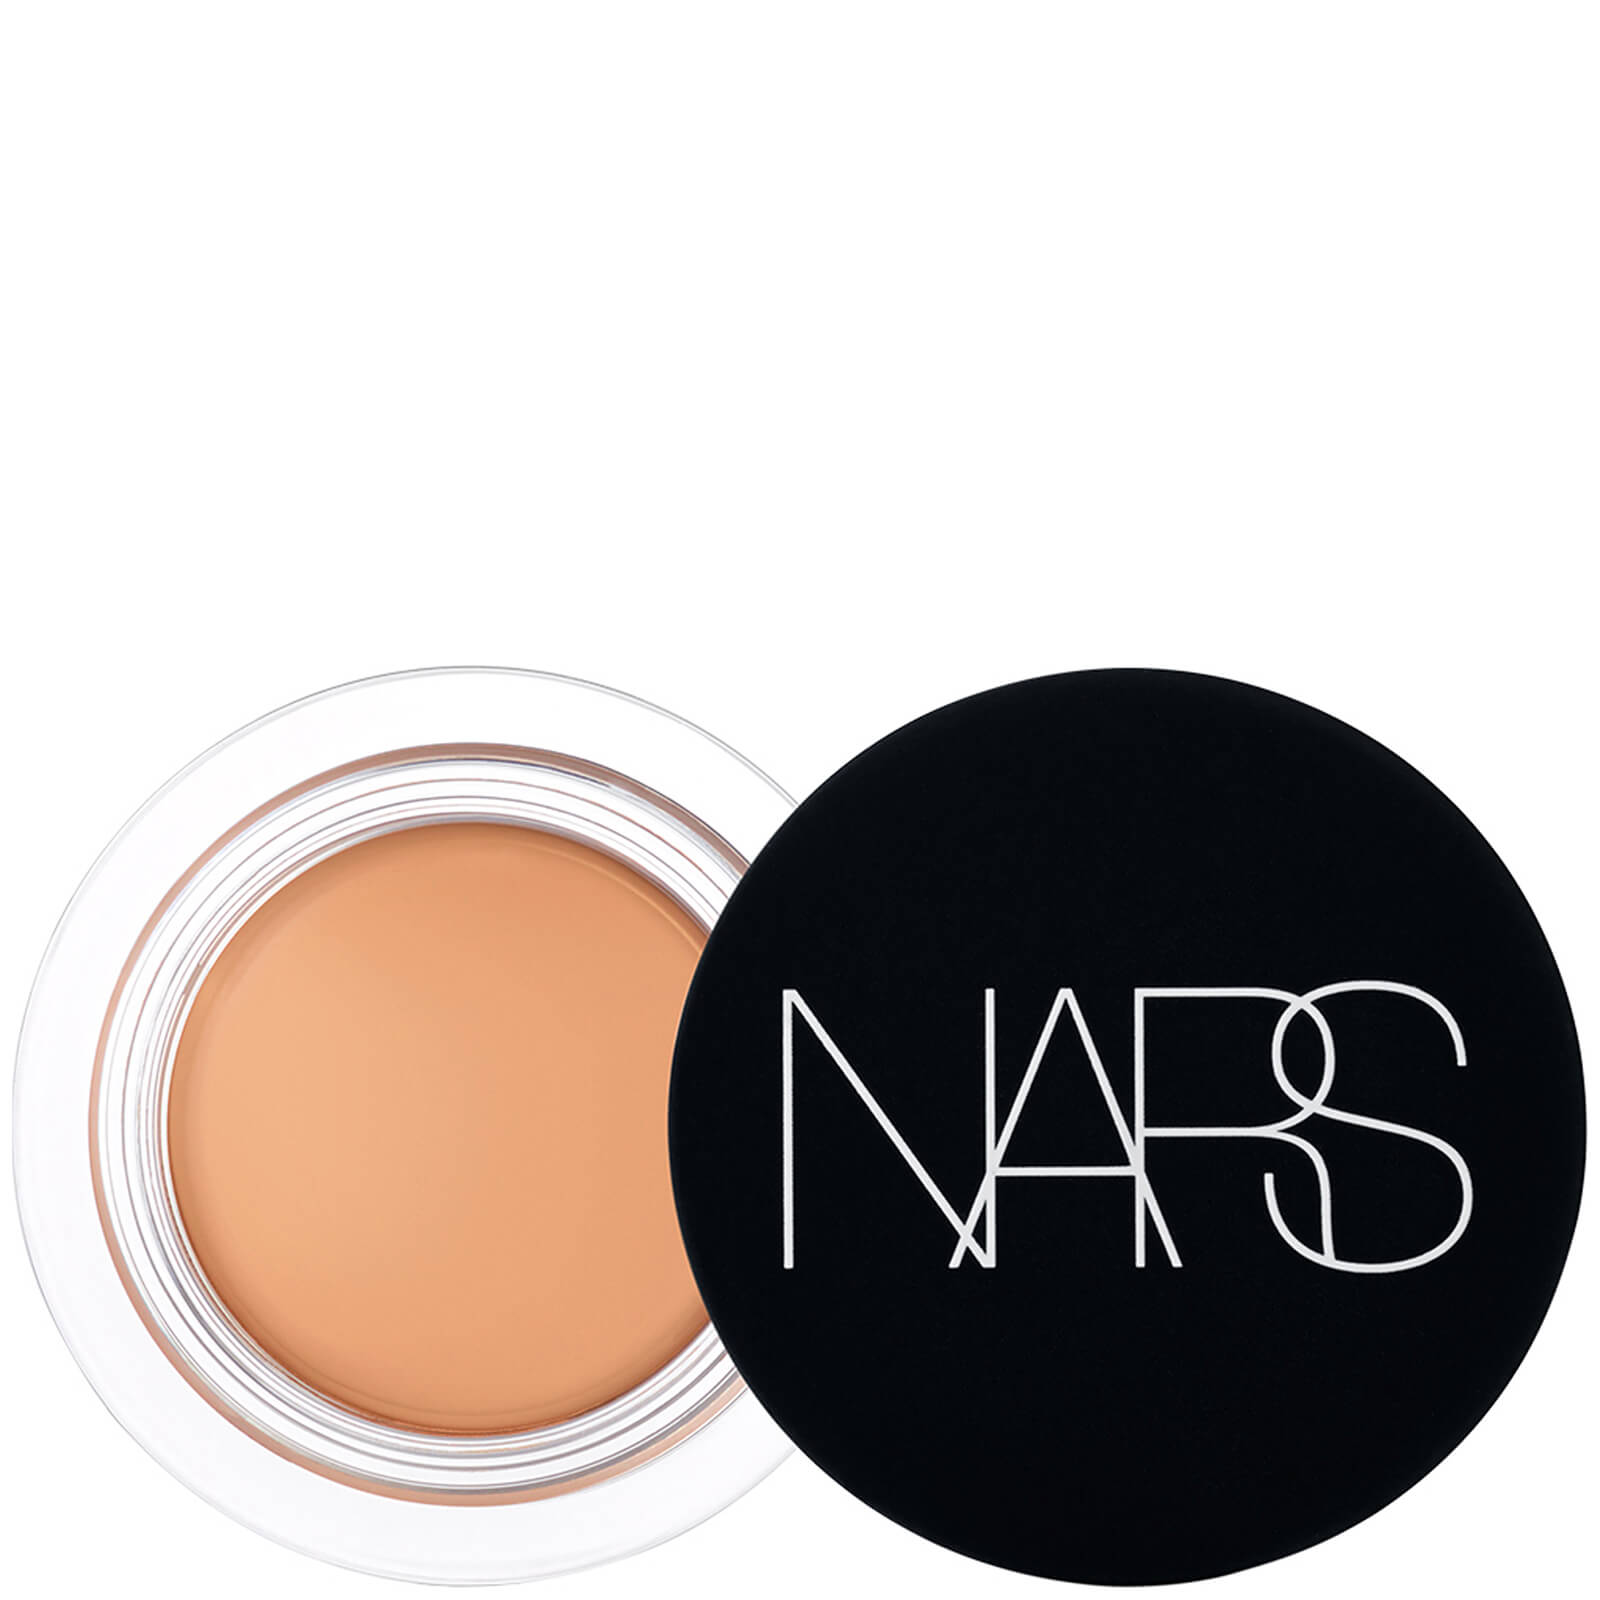 NARS Soft Matte Complete Concealer 6.2g (Various Shades) - Biscuit